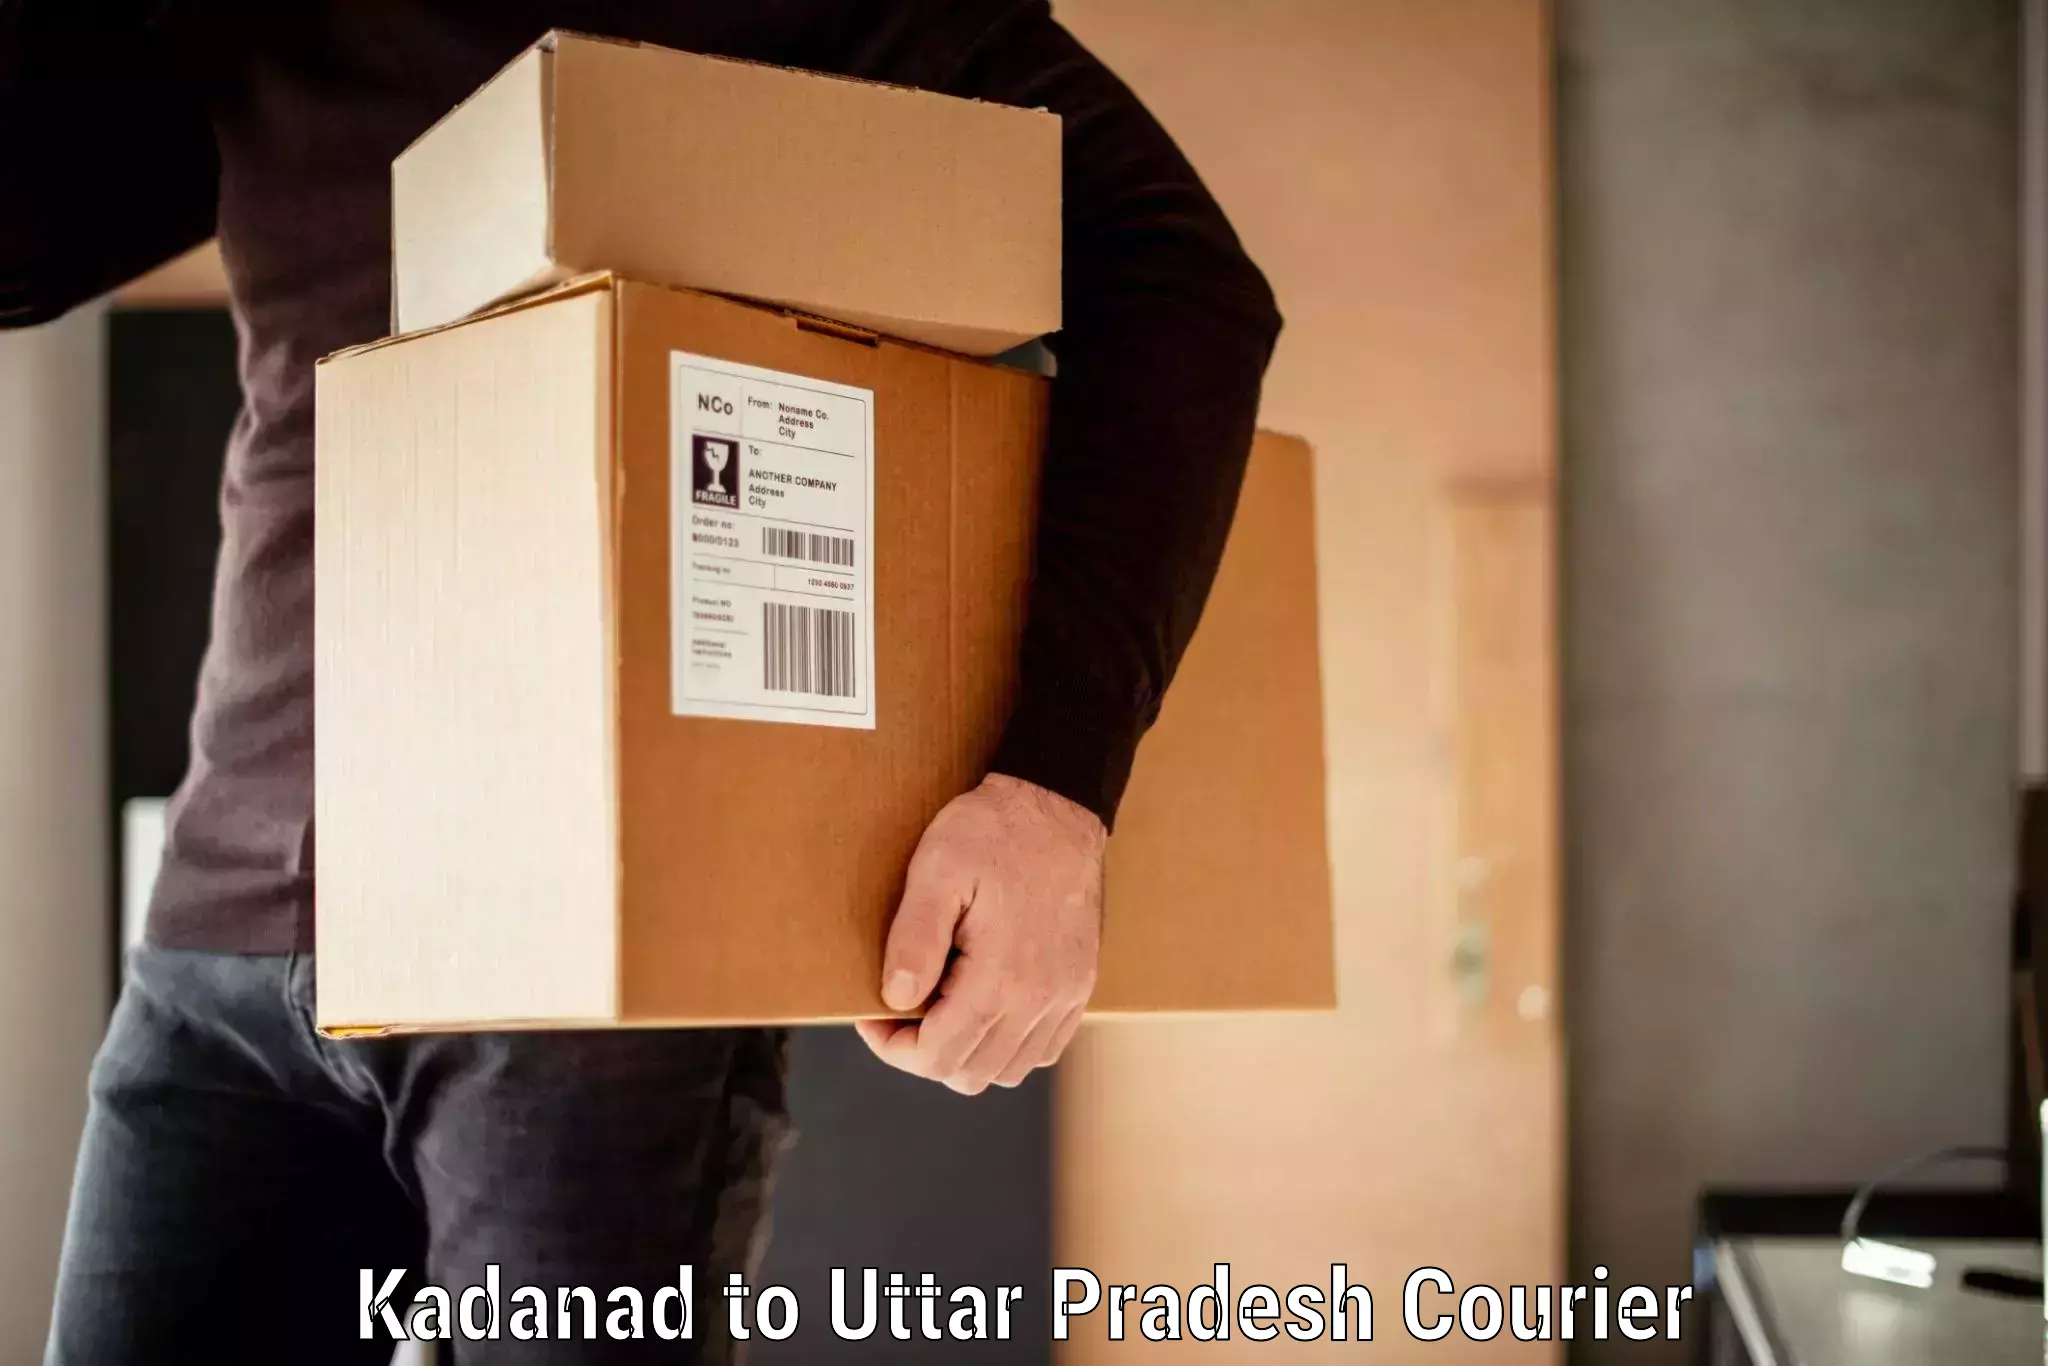 Luggage shipment specialists Kadanad to Uttar Pradesh